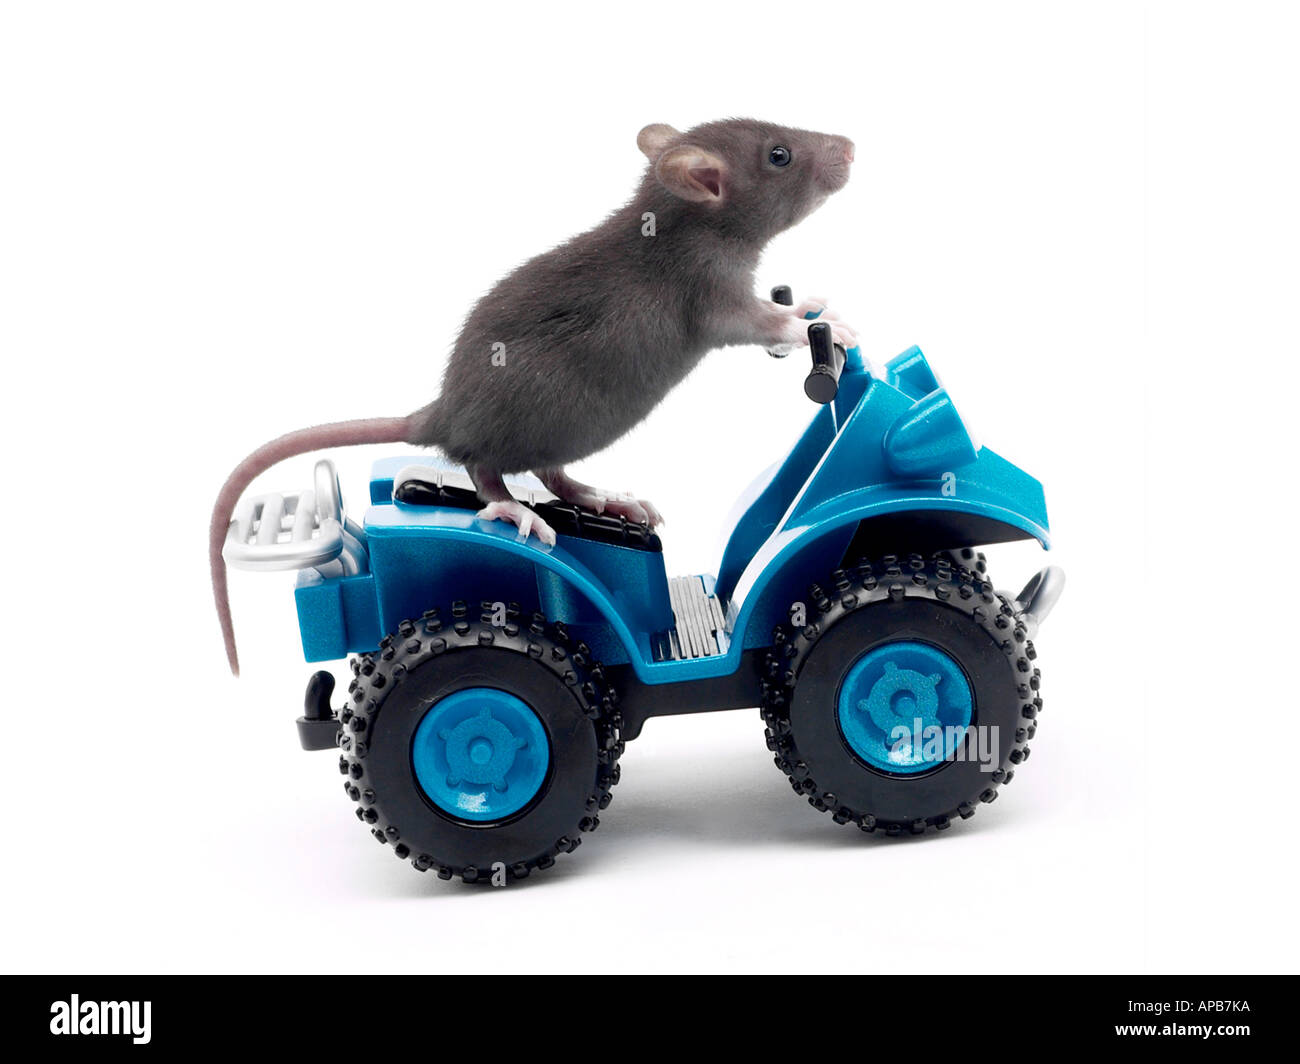 A rat on a toy car having a rat race. Stock Photo